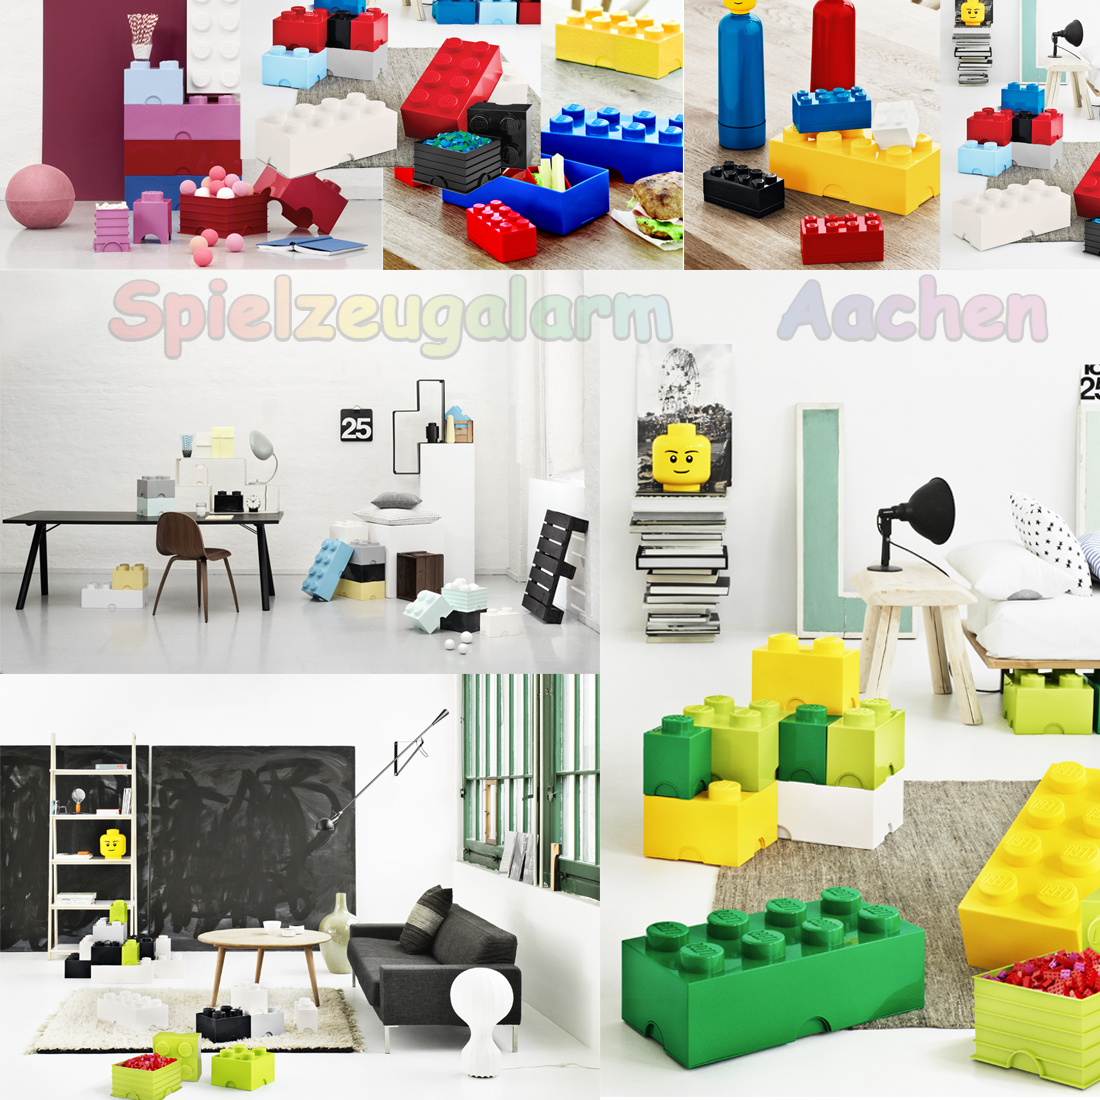 LEGO Storage Brick 4-8er Stein XXL Aufbewahrungsdose Kiste Box Stapelbar Noppe